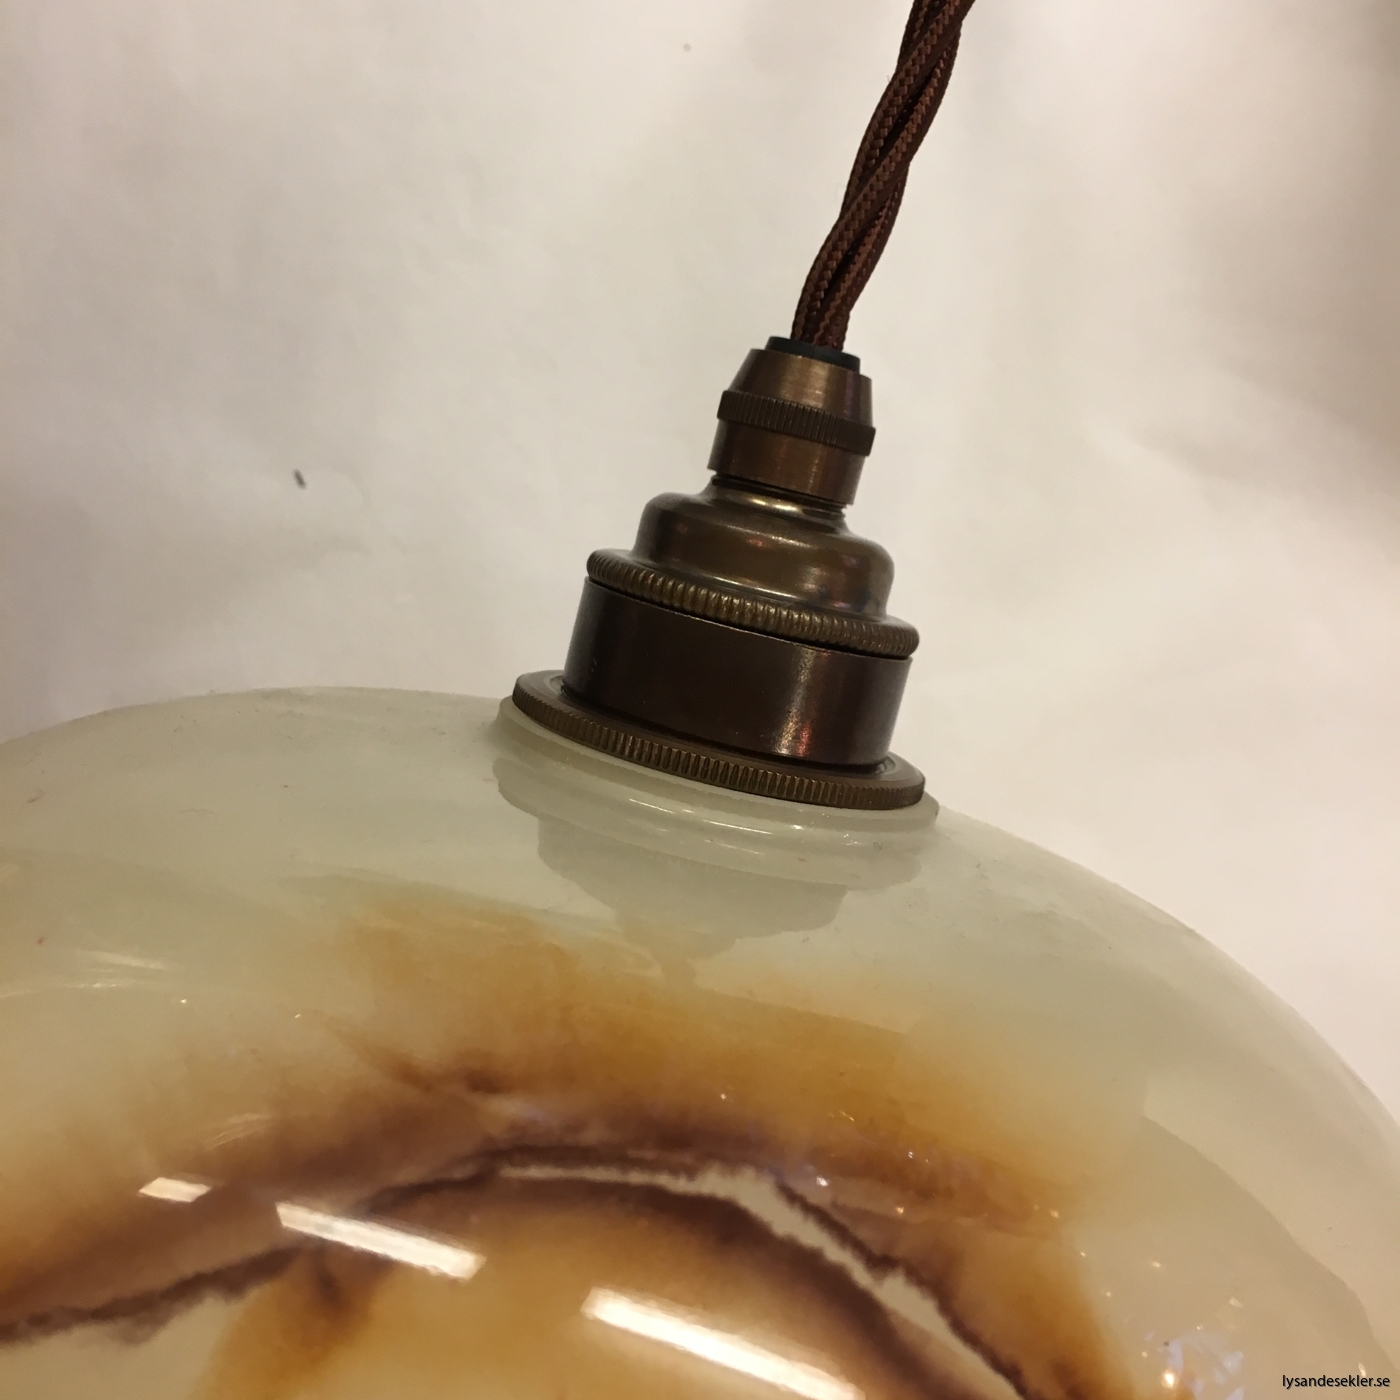 tygsladd textilssladd lampupphäng med 2 ringar utan skruvar för skärm eller glödlampa (44)